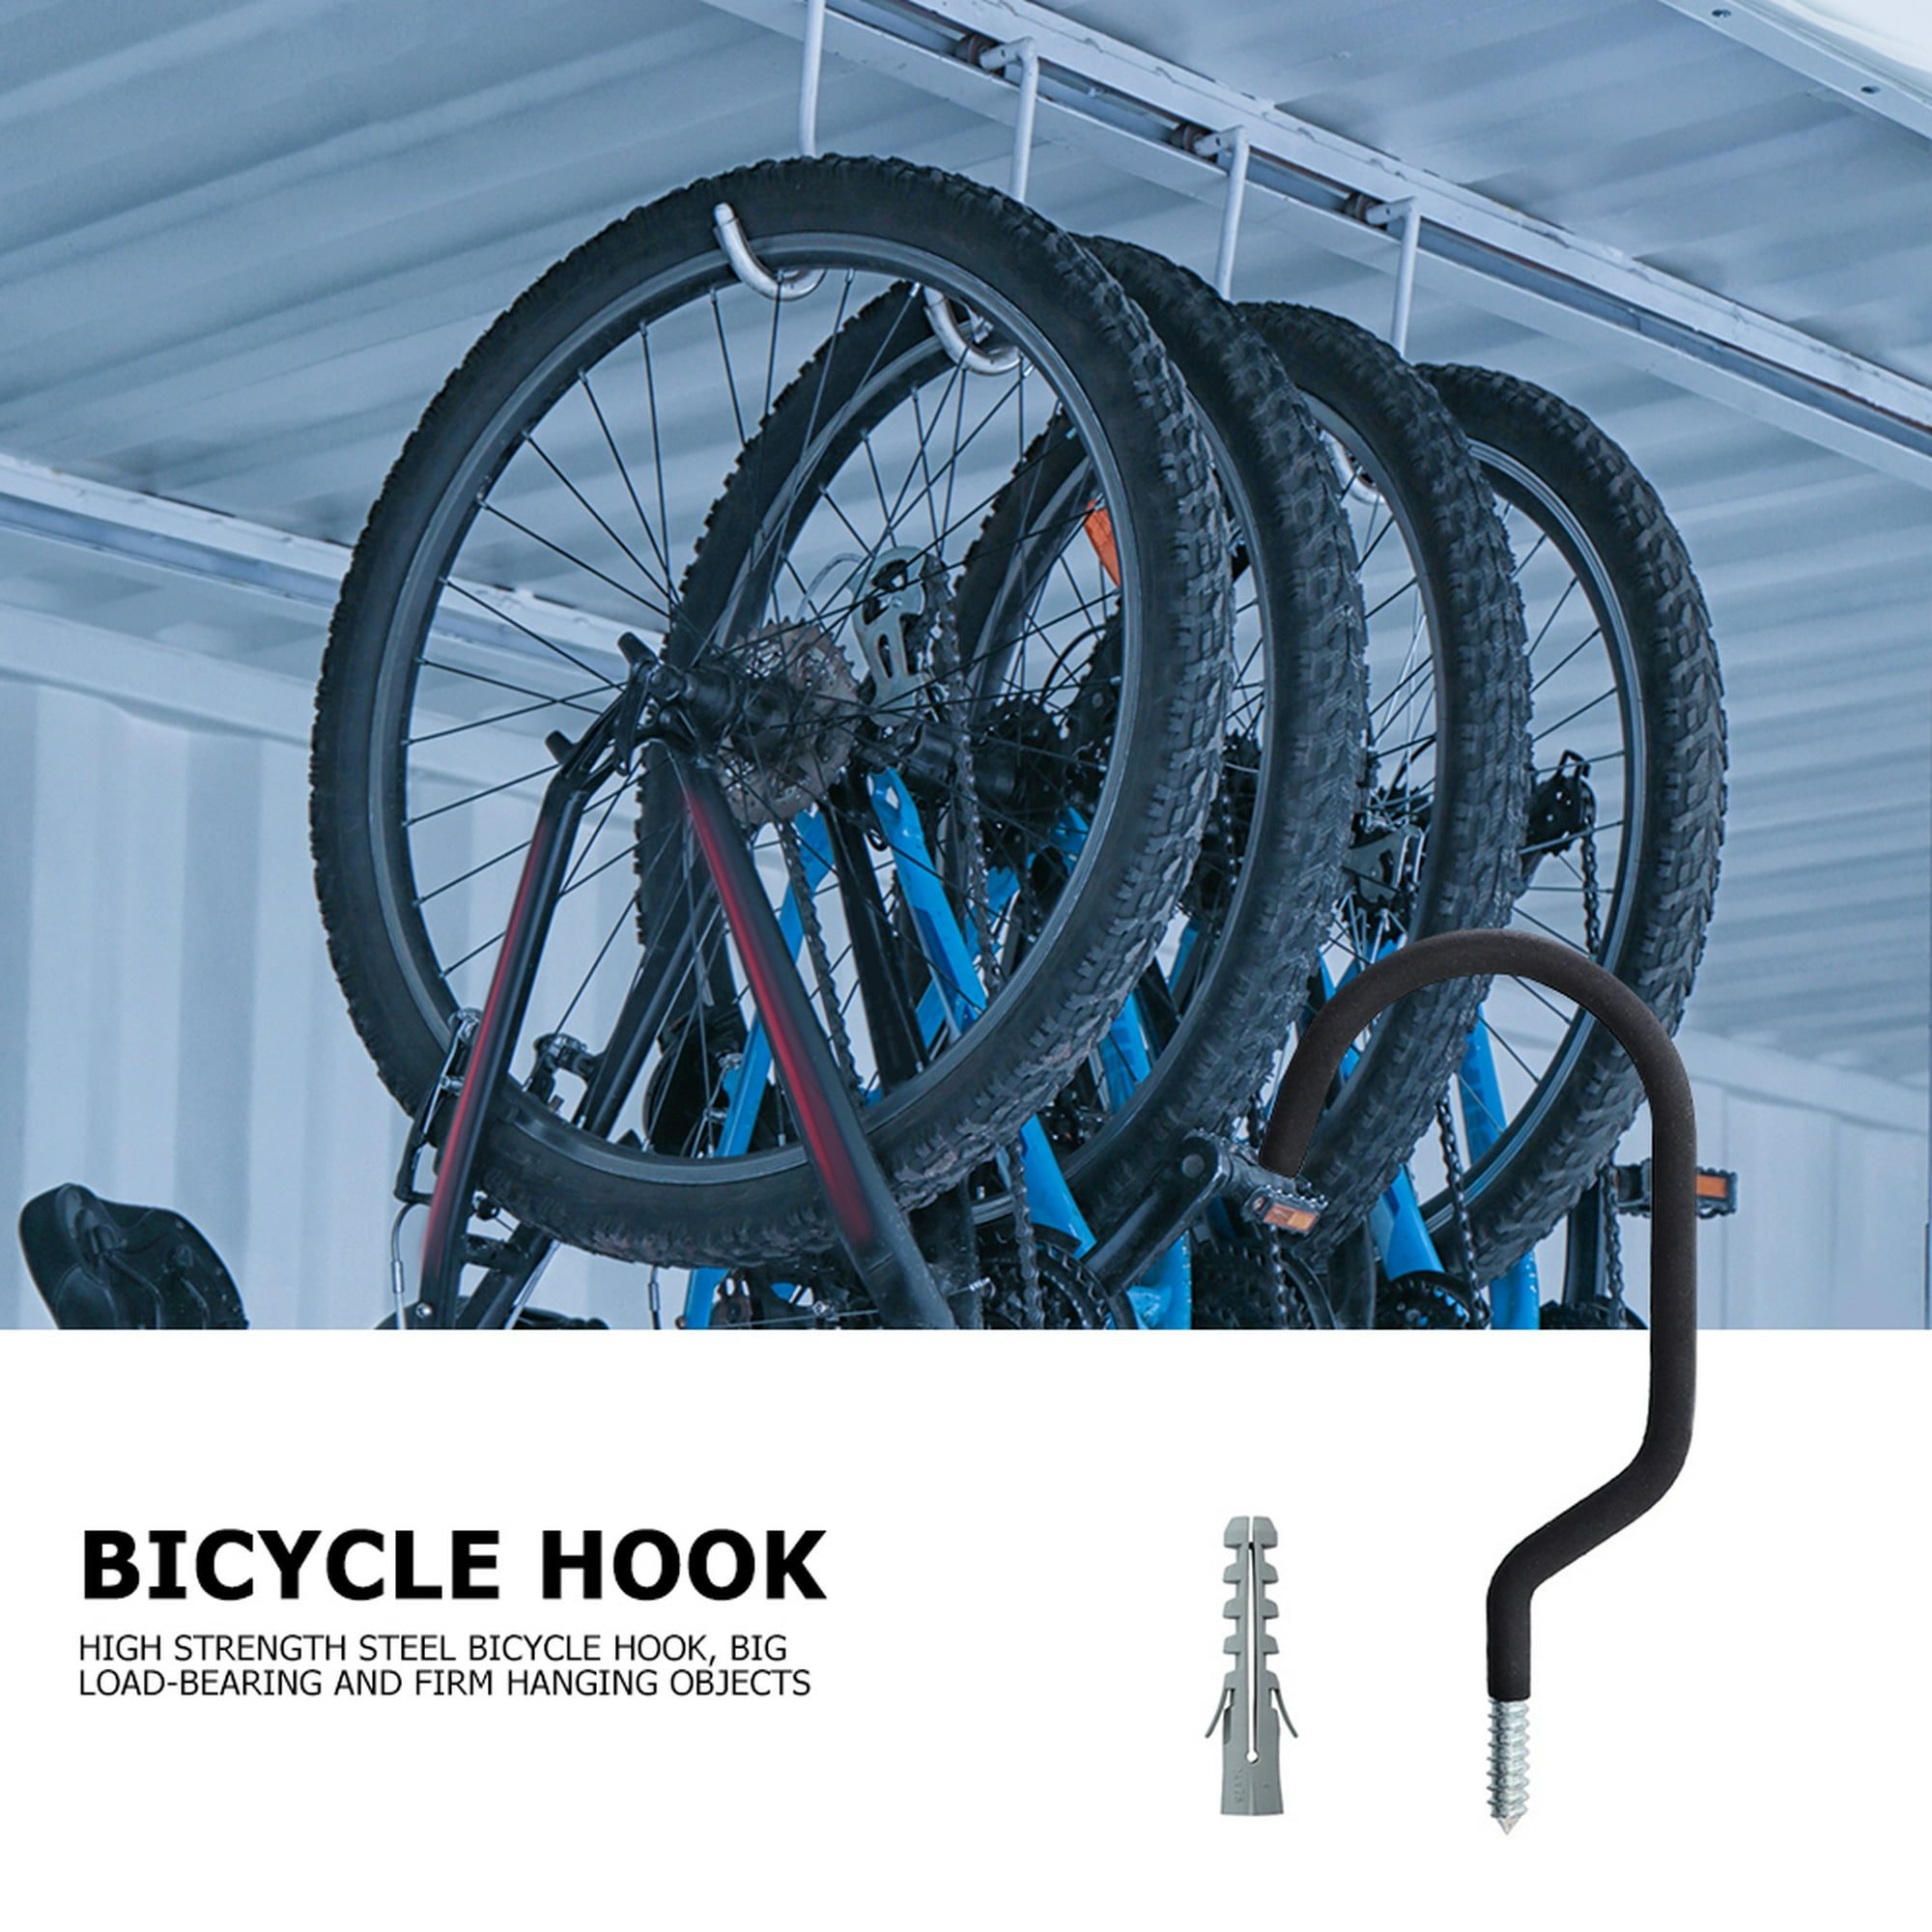 Ciclo Boutique - Gancho rack de pared para colgar tu